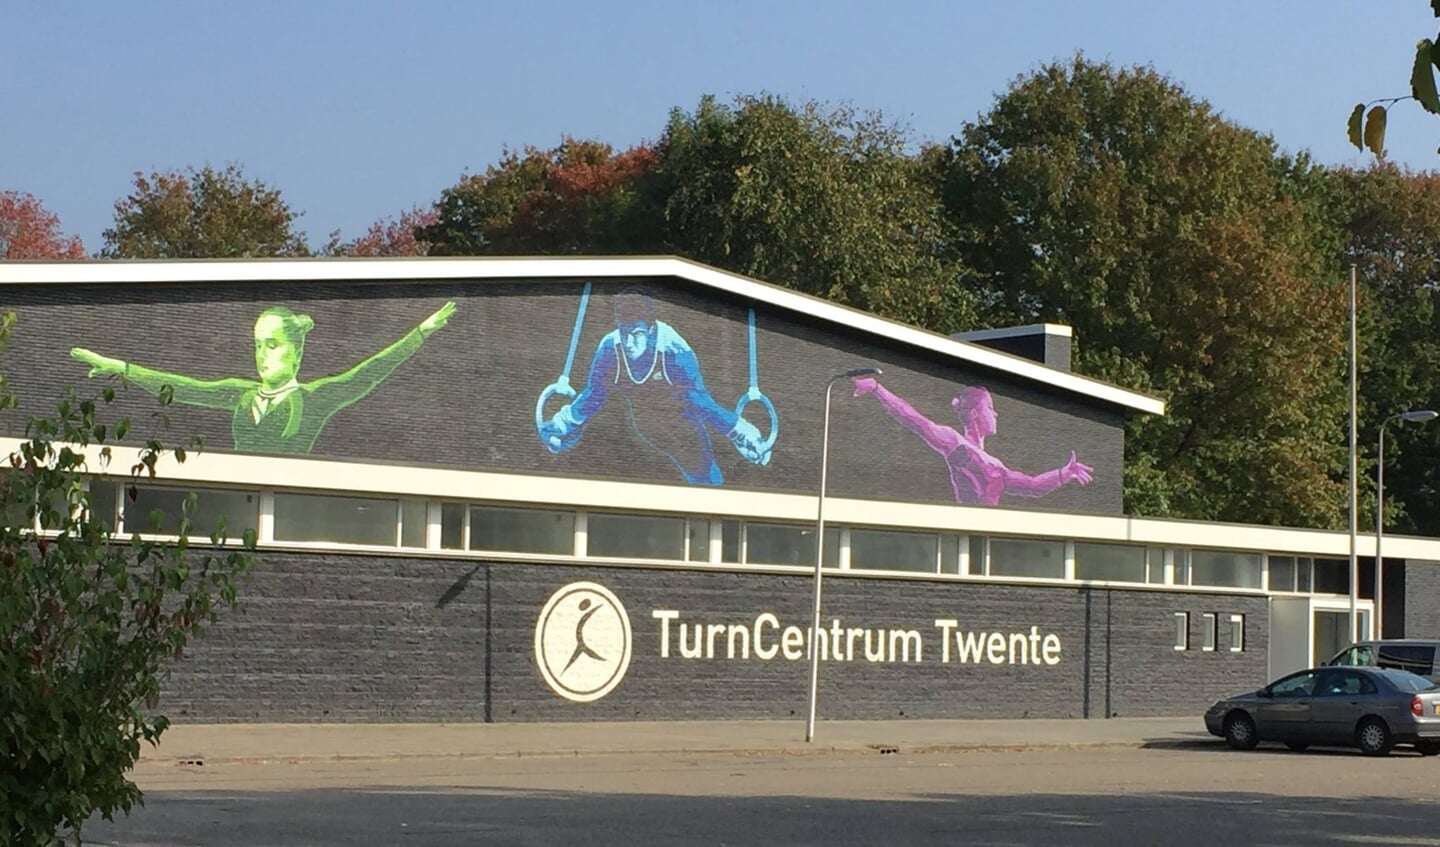 Turncentrum Twente. 